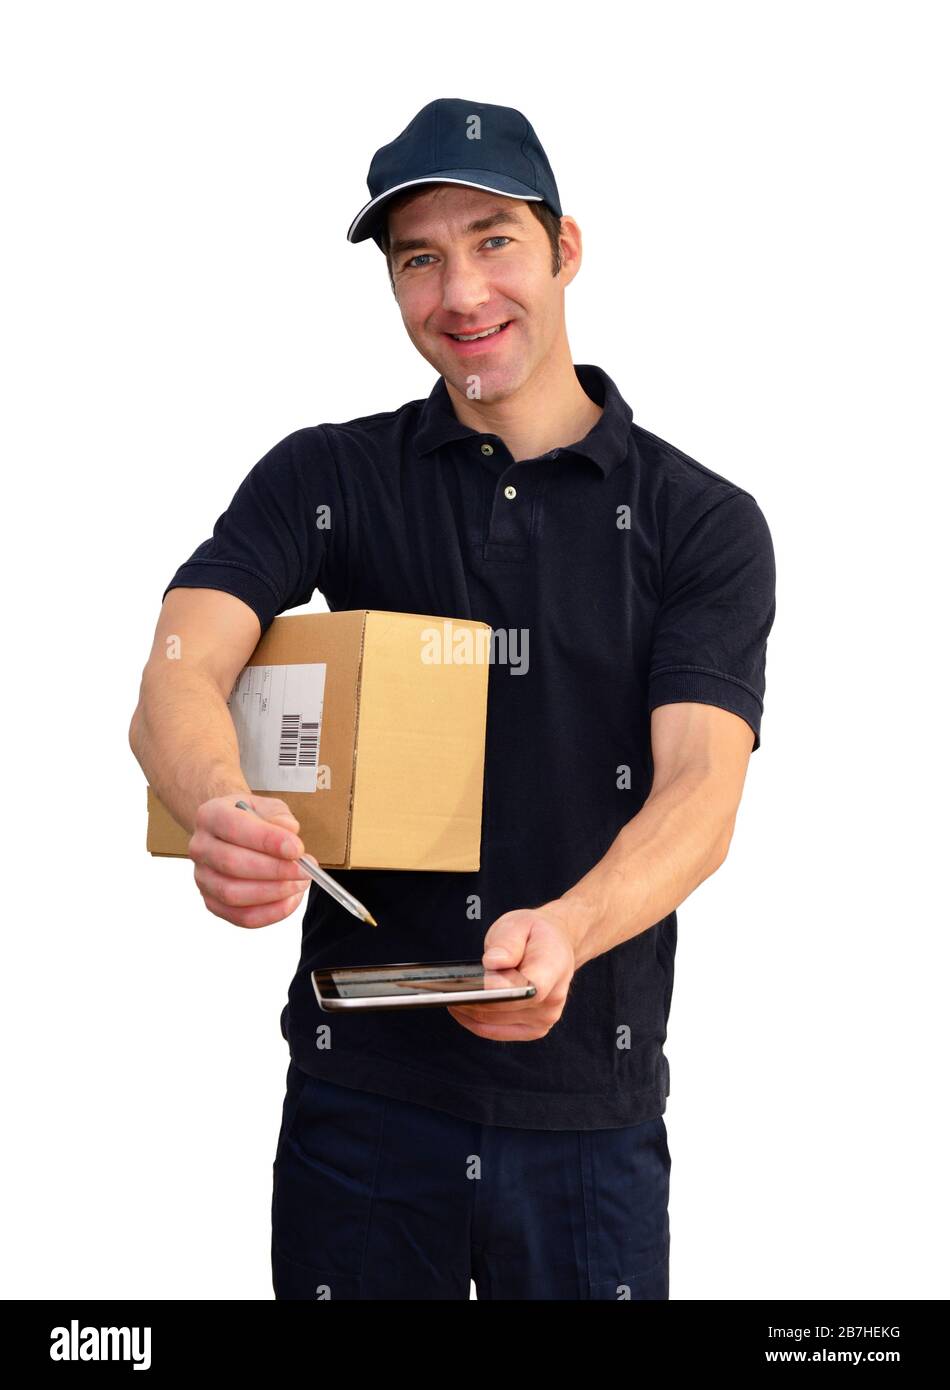 Servizio di consegna a domicilio - fattorino a consegnare pacchi e spedizioni - isolato su sfondo bianco Foto Stock